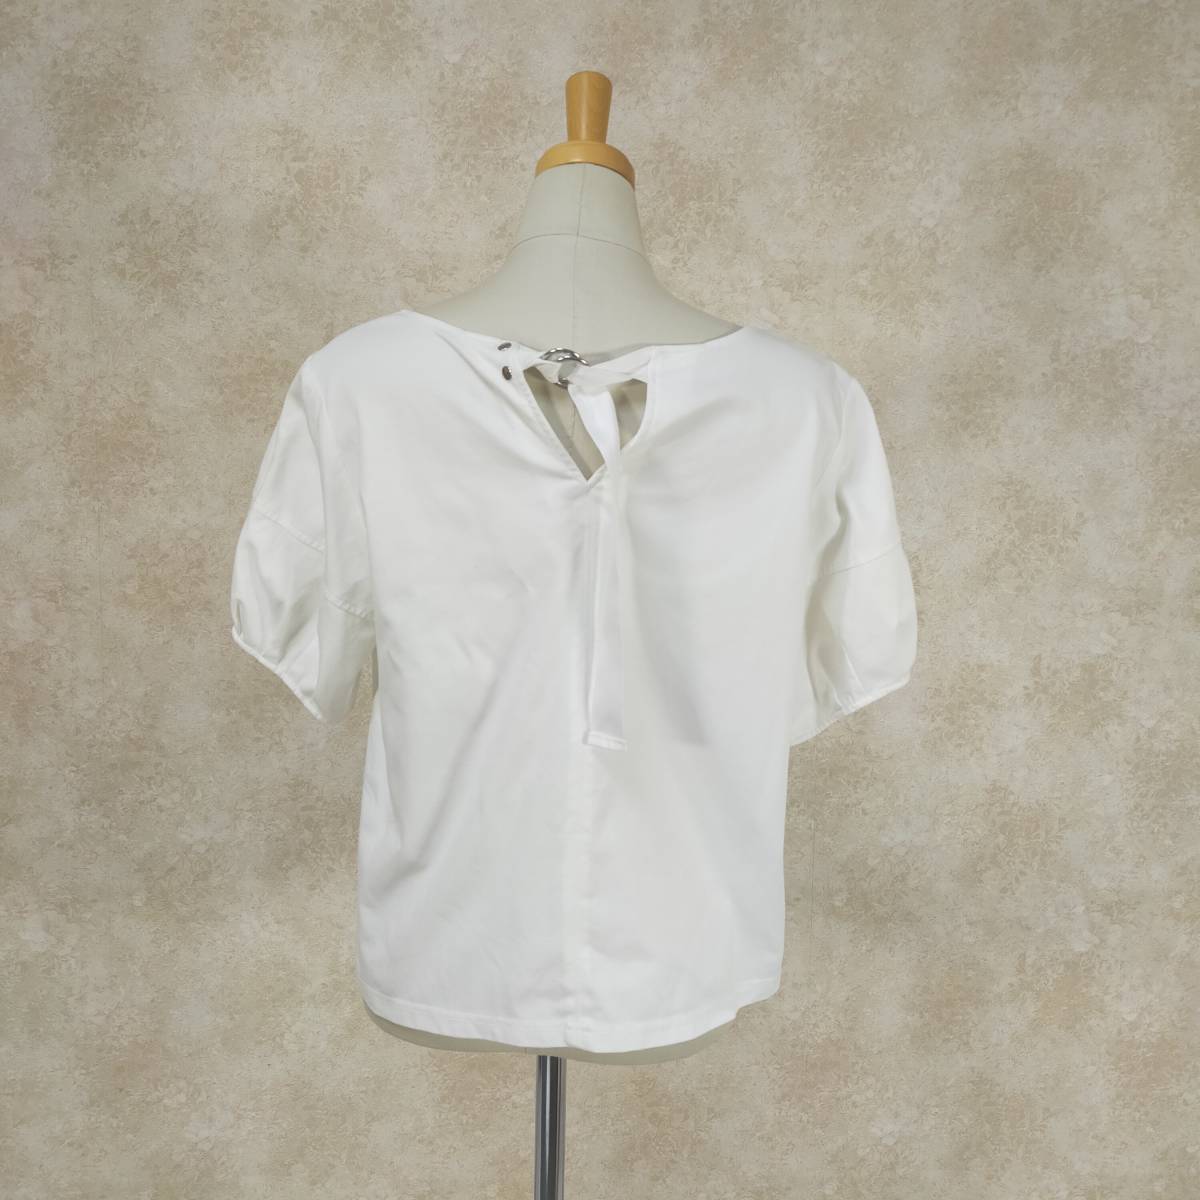 BARNEYS NEW YORK Barneys New York блуза размер 38 M белый короткий рукав тянуть over пуховка рукав простой освежение 3775